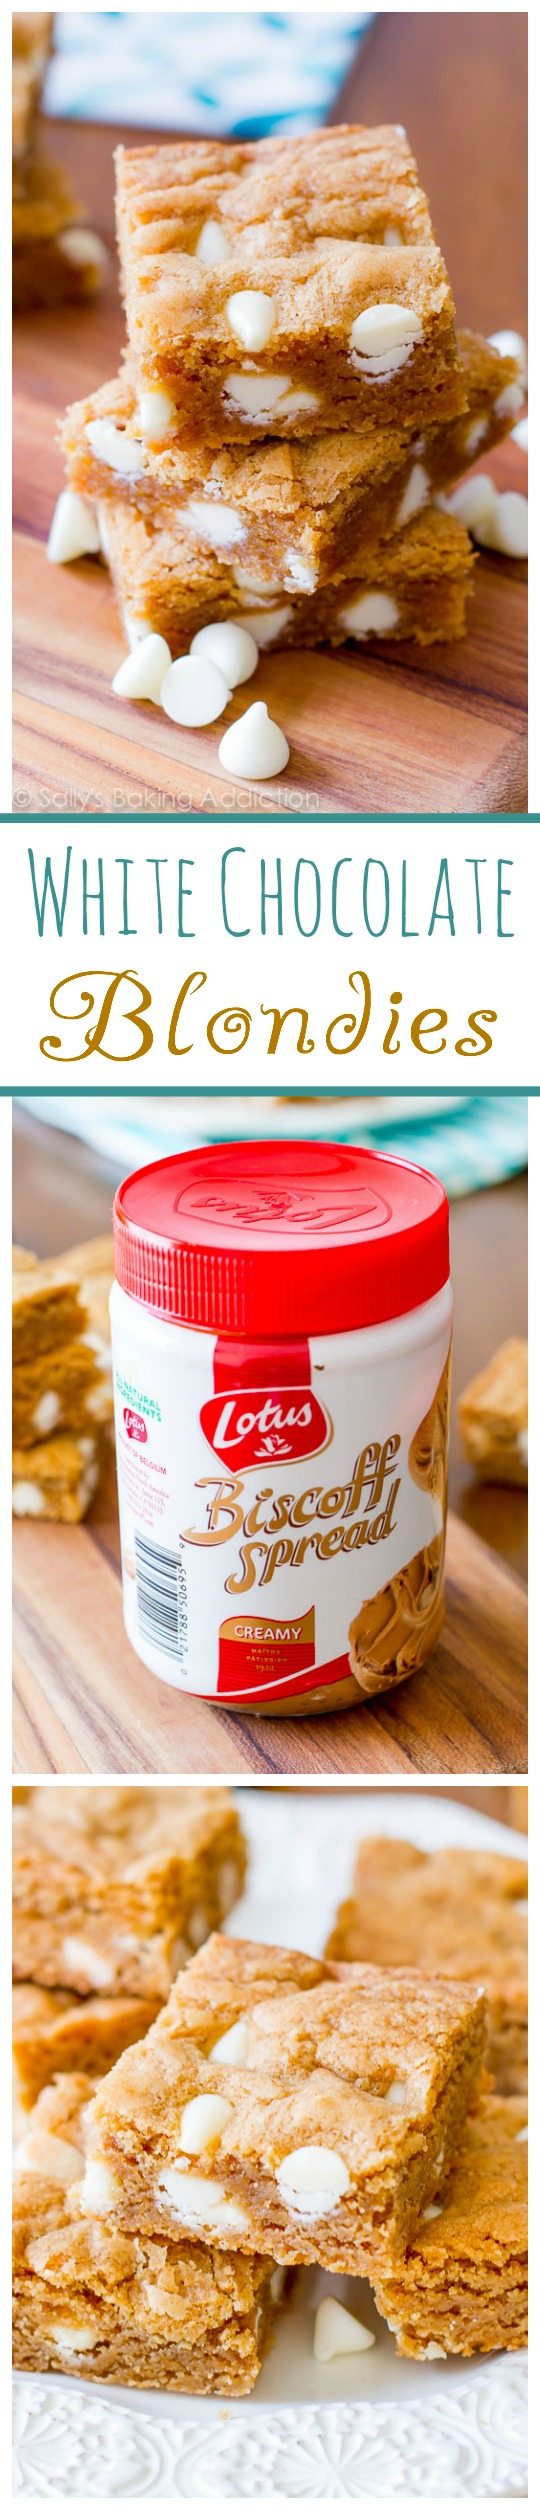 Comment faire les meilleurs blondies! Le secret est dans la tartinade de beurre de biscuits Biscoff!